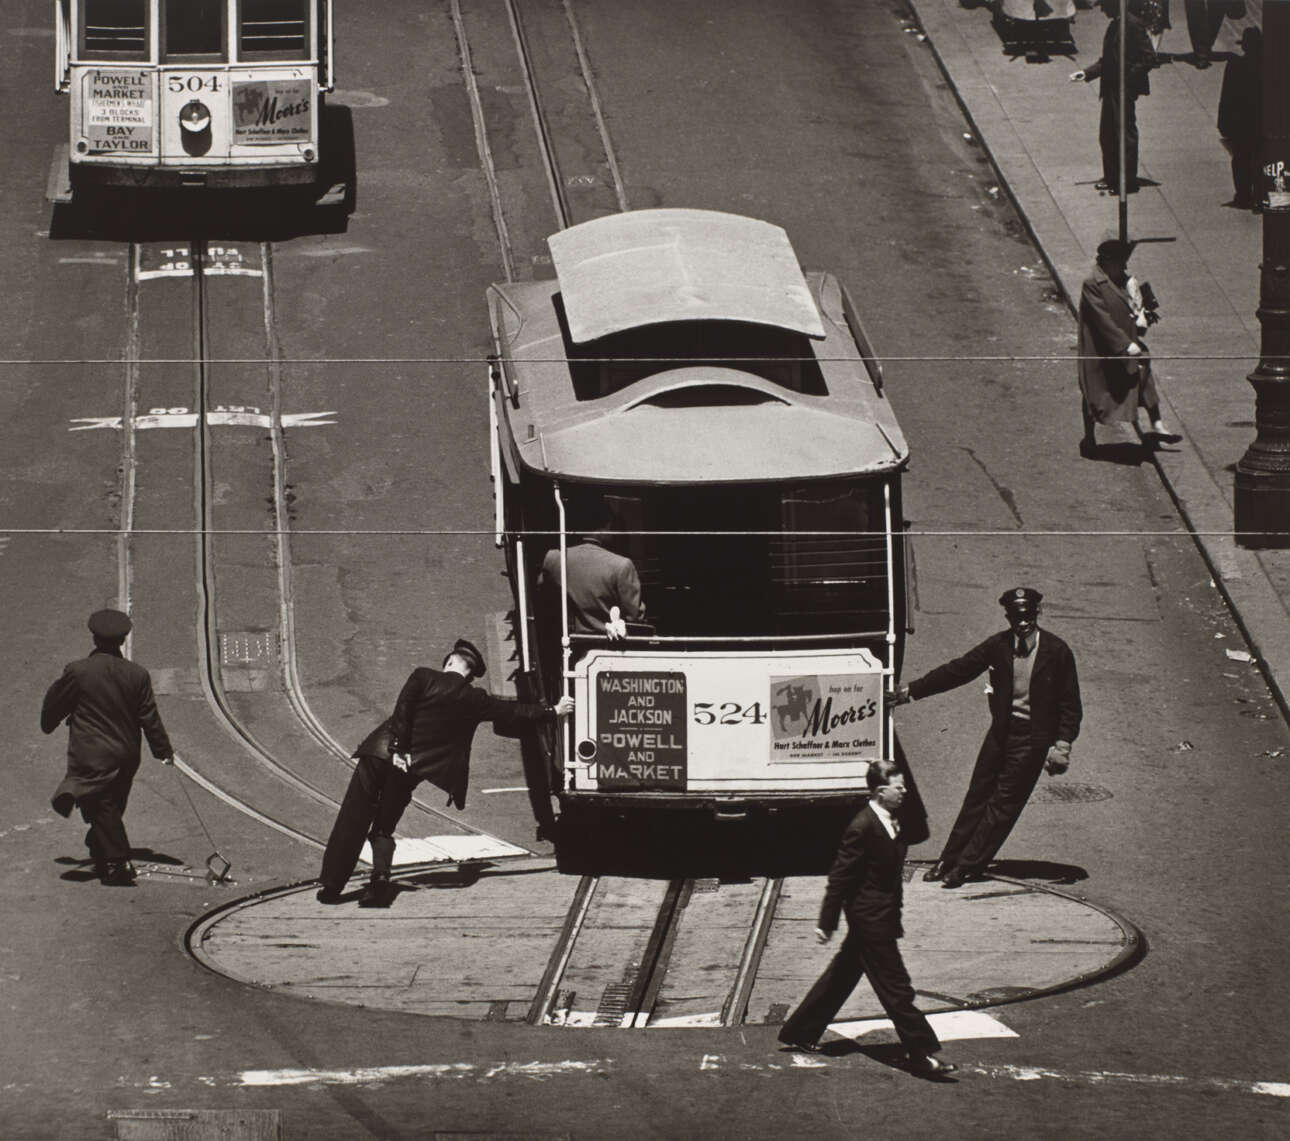 Βαγόνι του τραμ στο Σαν Φρανσίσκο, 1949